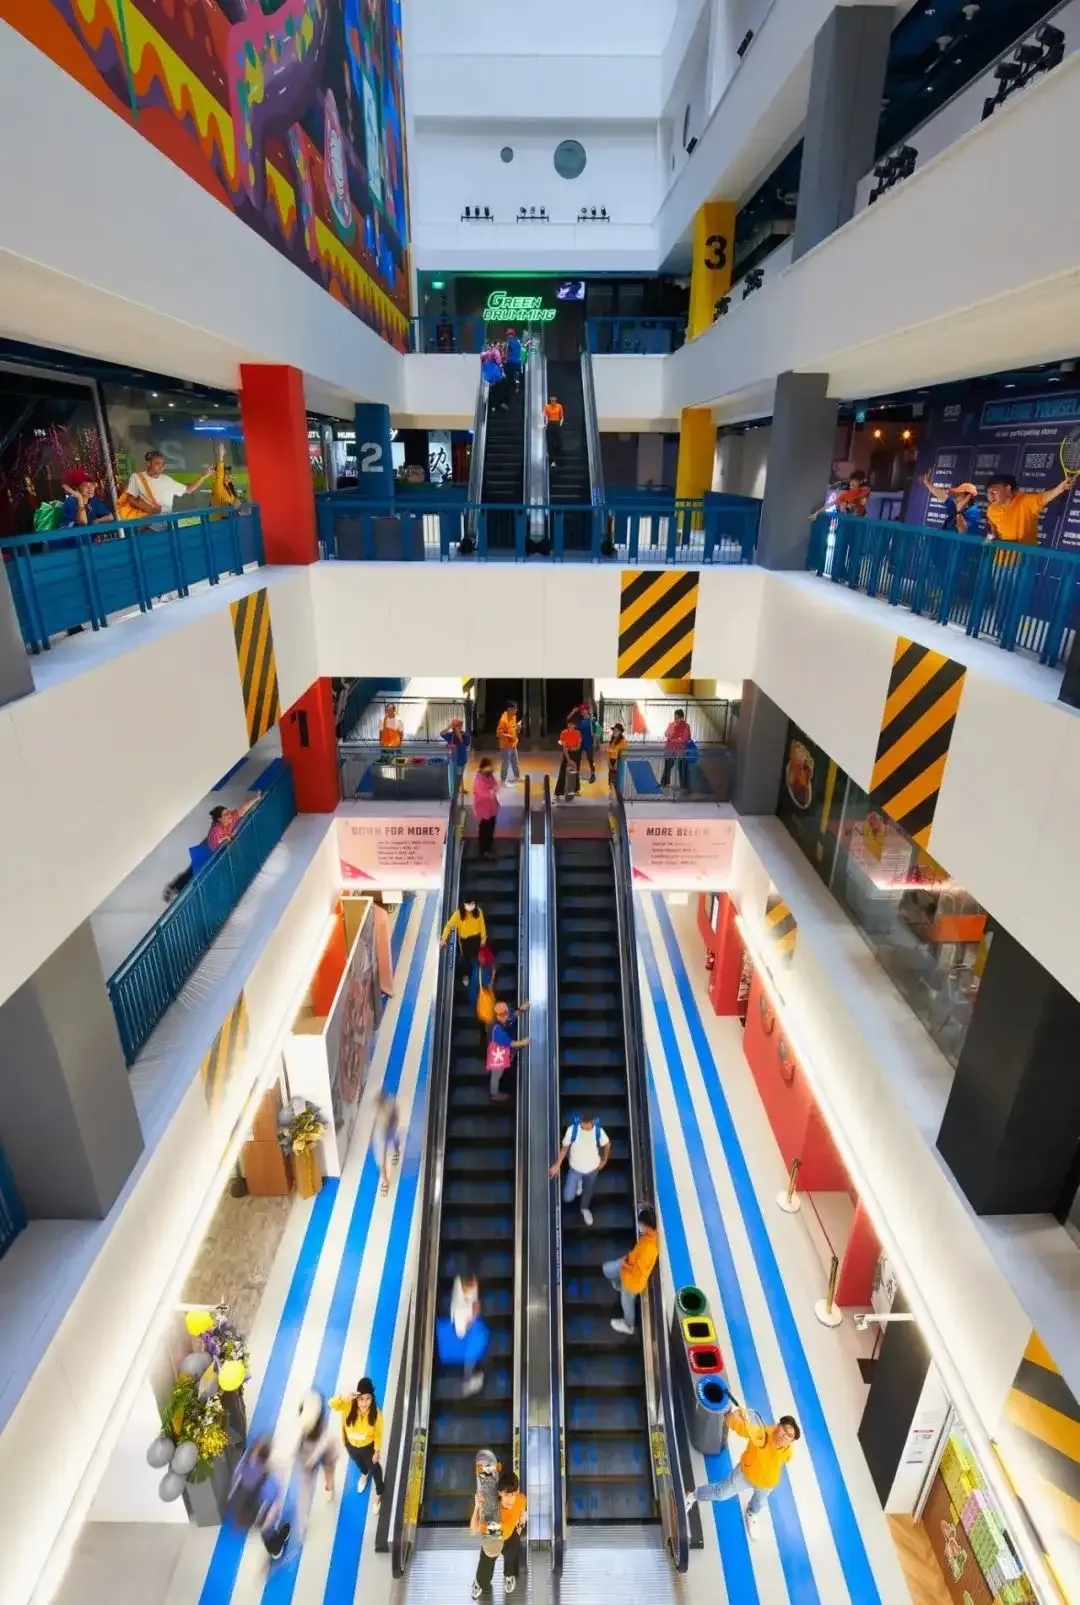 新加坡GRiD商业惊艳改造 用工业霓虹打造城市新地标